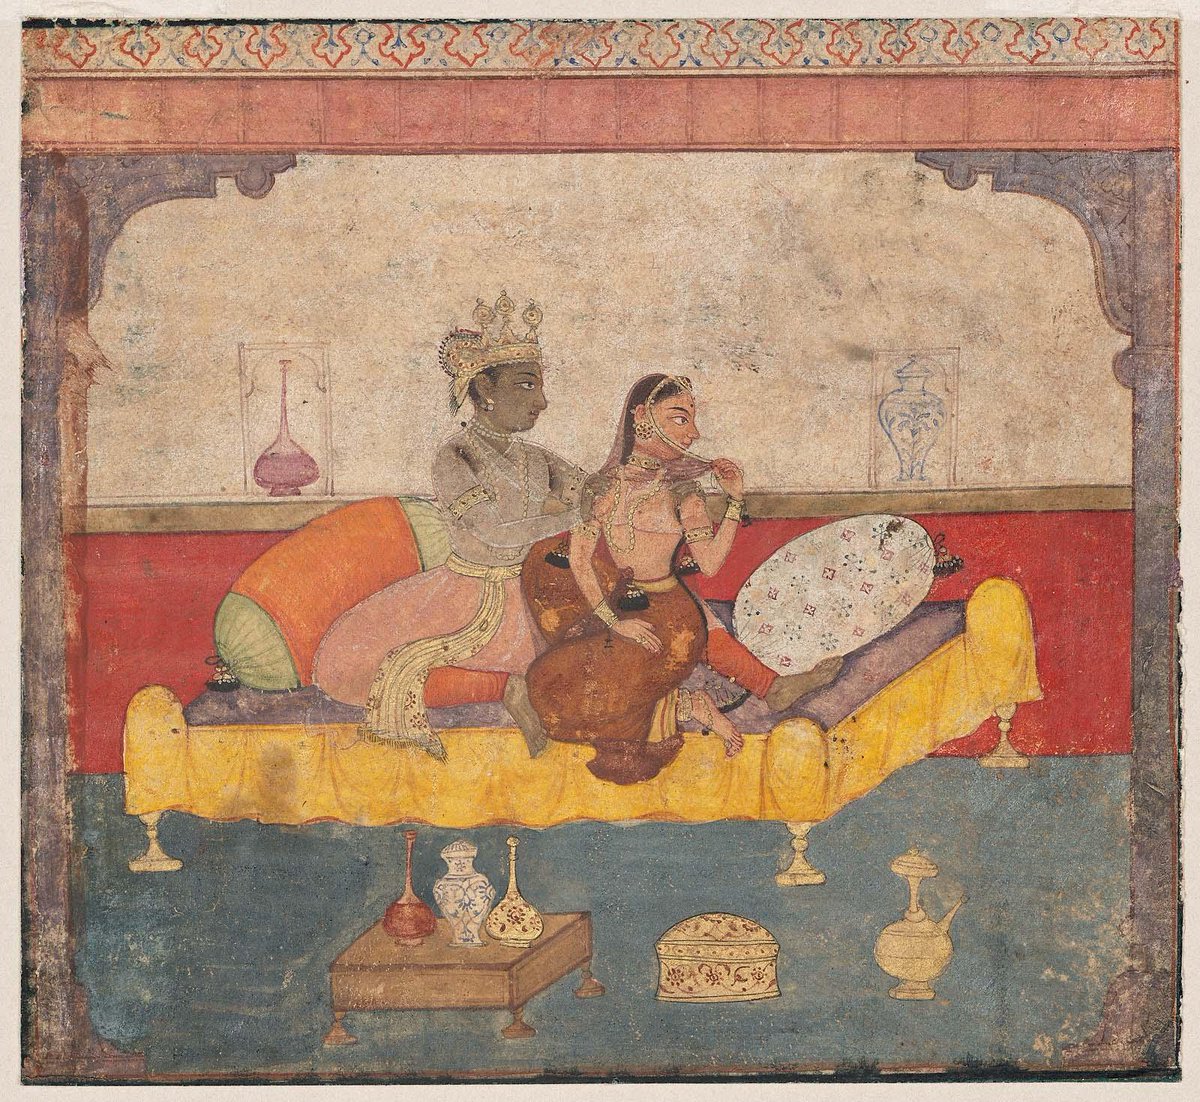 Bhed Jiya Ke Sab Kholega... Subha Papiha Jab Bolega.... Laaj Sharam Se Mar Jaaungi... 0o Laaj Sharam Se Mar Jaaungi Main... O Saiyaan Hatto Jaao Tum Bade Wo Ho.. O Saiyaan Hatto Jaao Tum Bade Wo Ho... -Keshava Das's 'Rasikapriya': The Shy Nayika, Mughal period,Indian about 1615